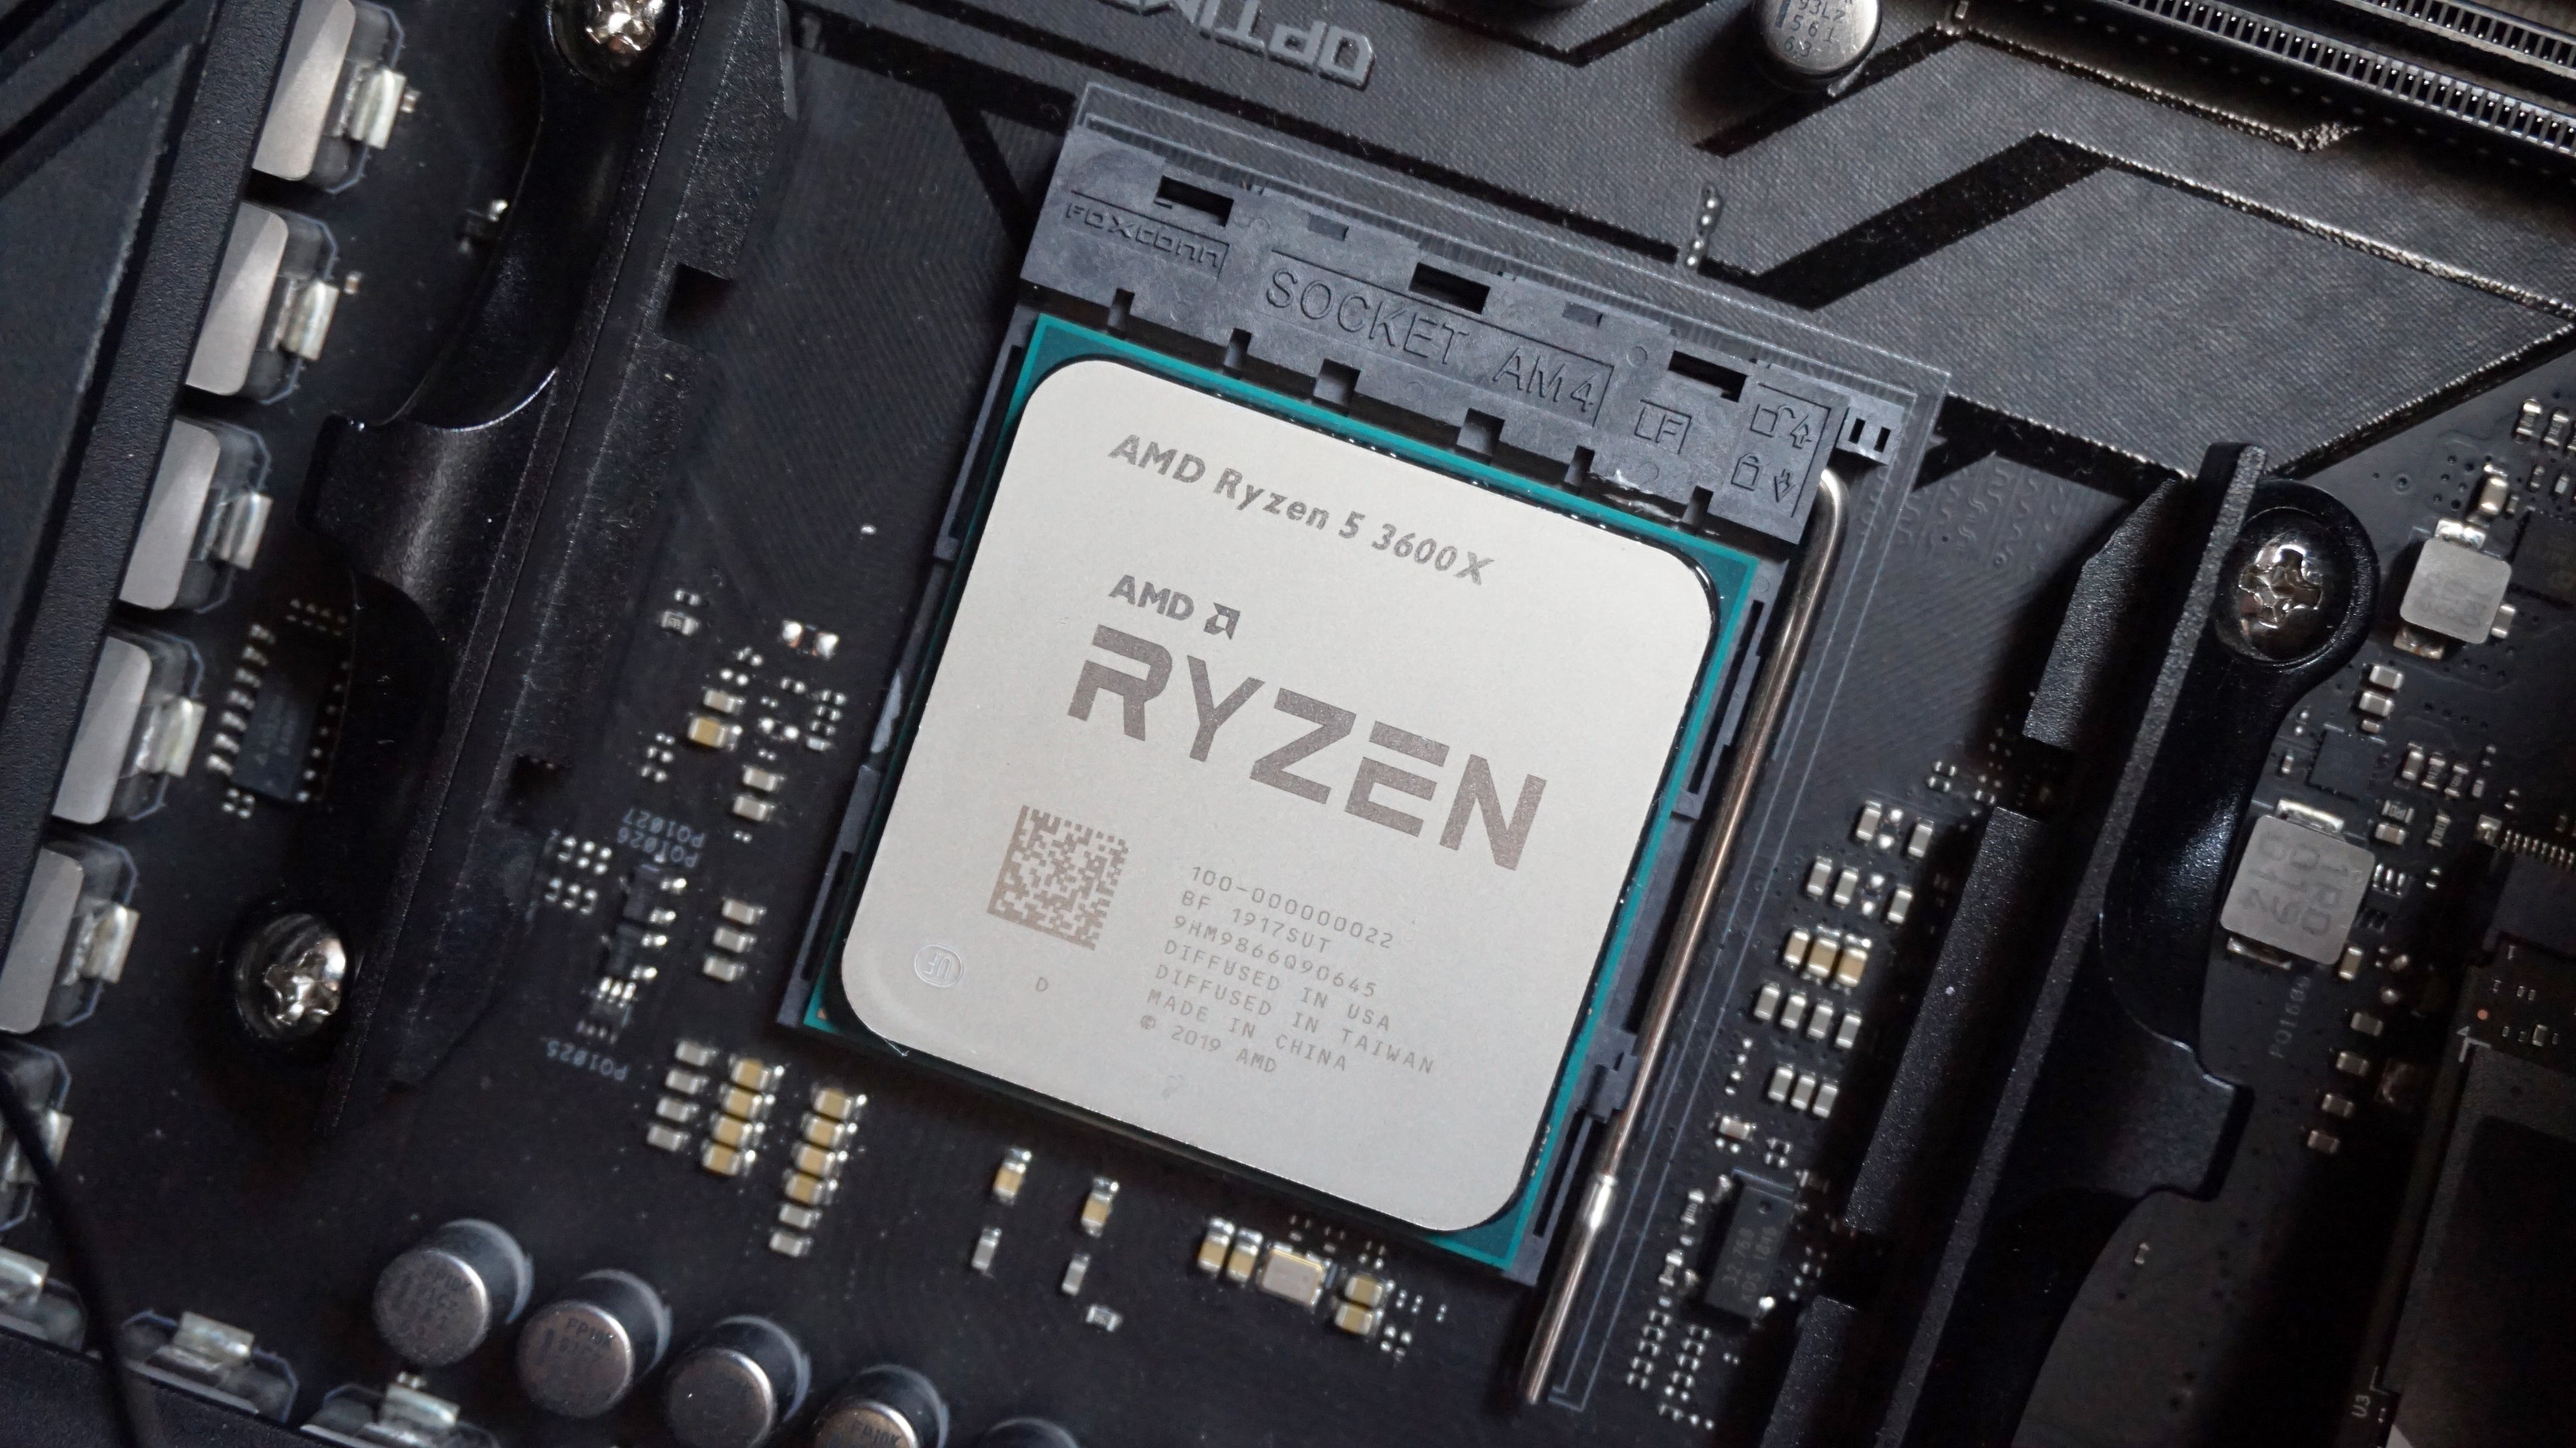 Райзен какой сокет. Ryzen 5 3600x. AMD Ryzen 5 3600. Процессор AMD Ryzen 5 3600x OEM. AMD Ryzen 5 3600 am4, 6 x 3600 МГЦ.